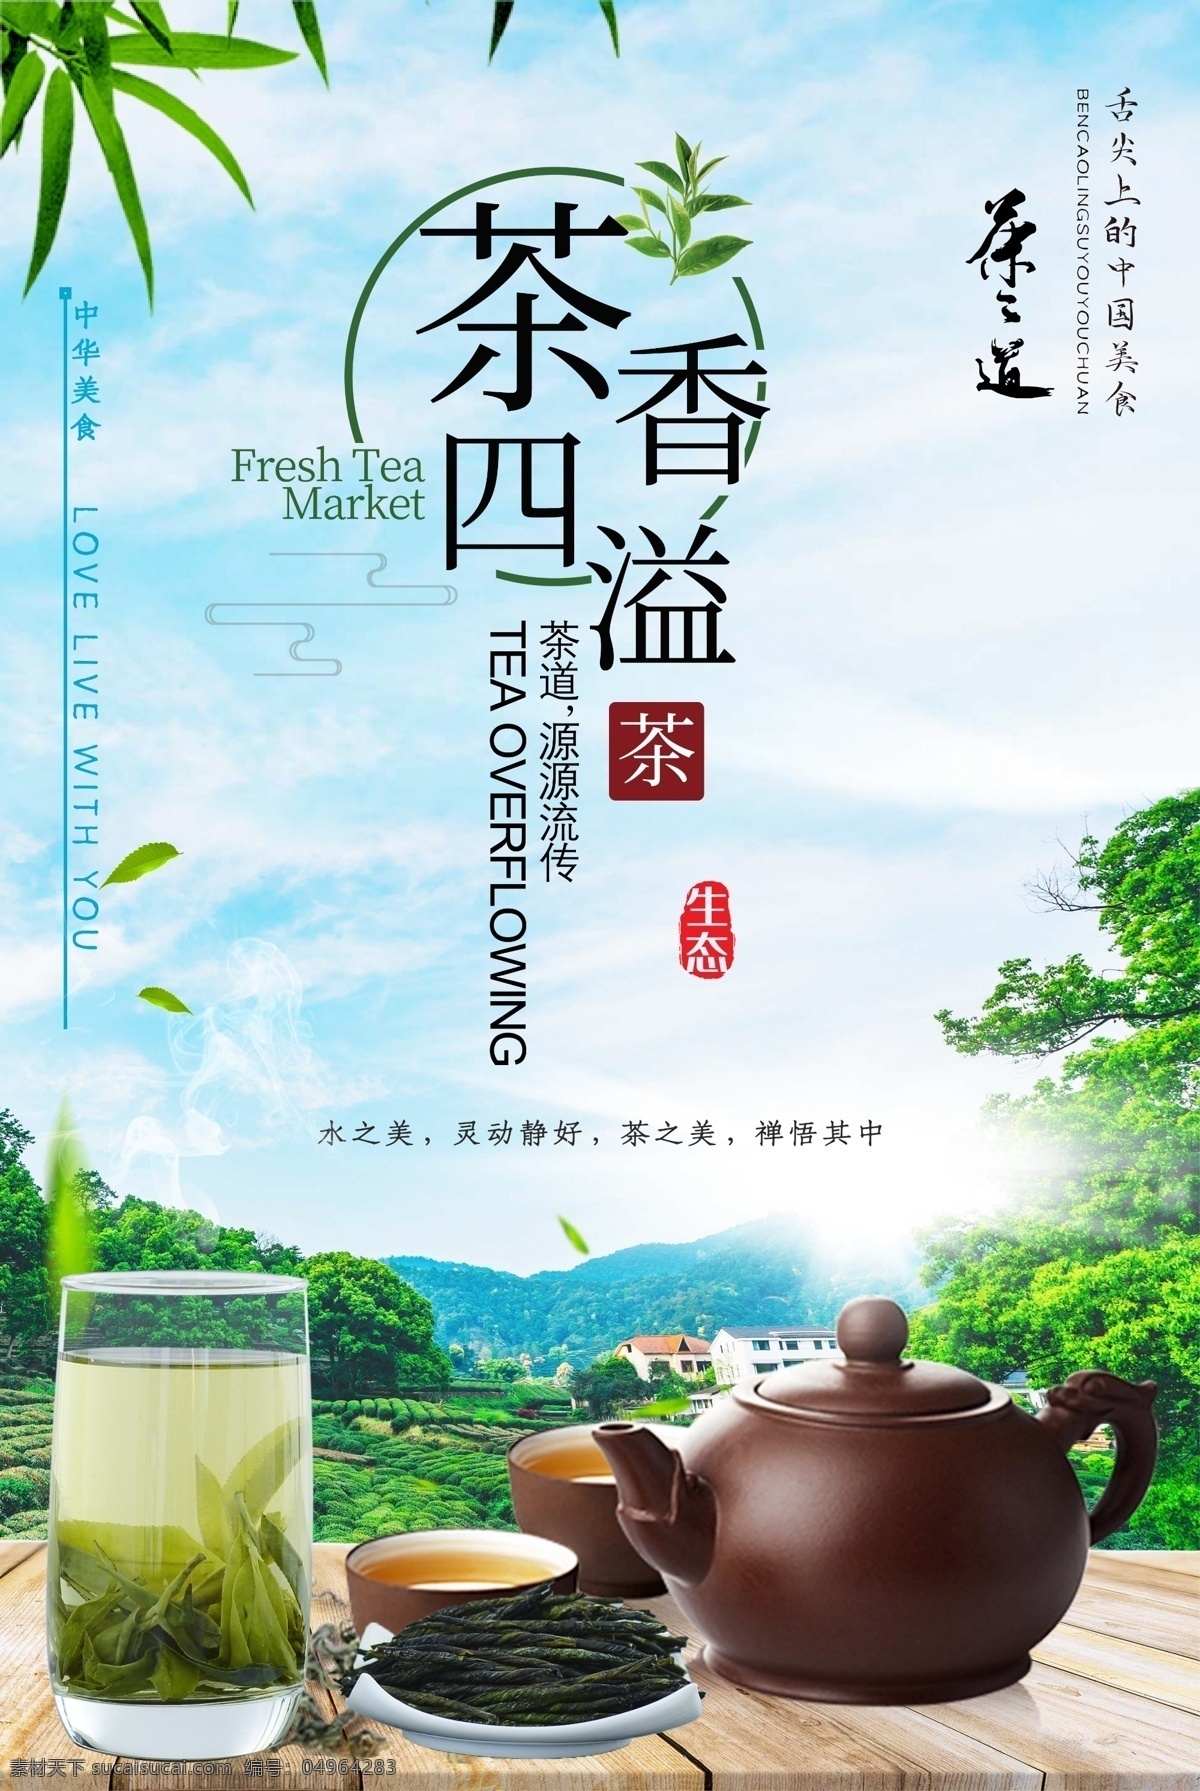 茶香 四溢 茶文化 海报 茶香四溢 茶文化海报 茶道文化 茶 中华茶文化 传统文化 绿茶 茶道 分层